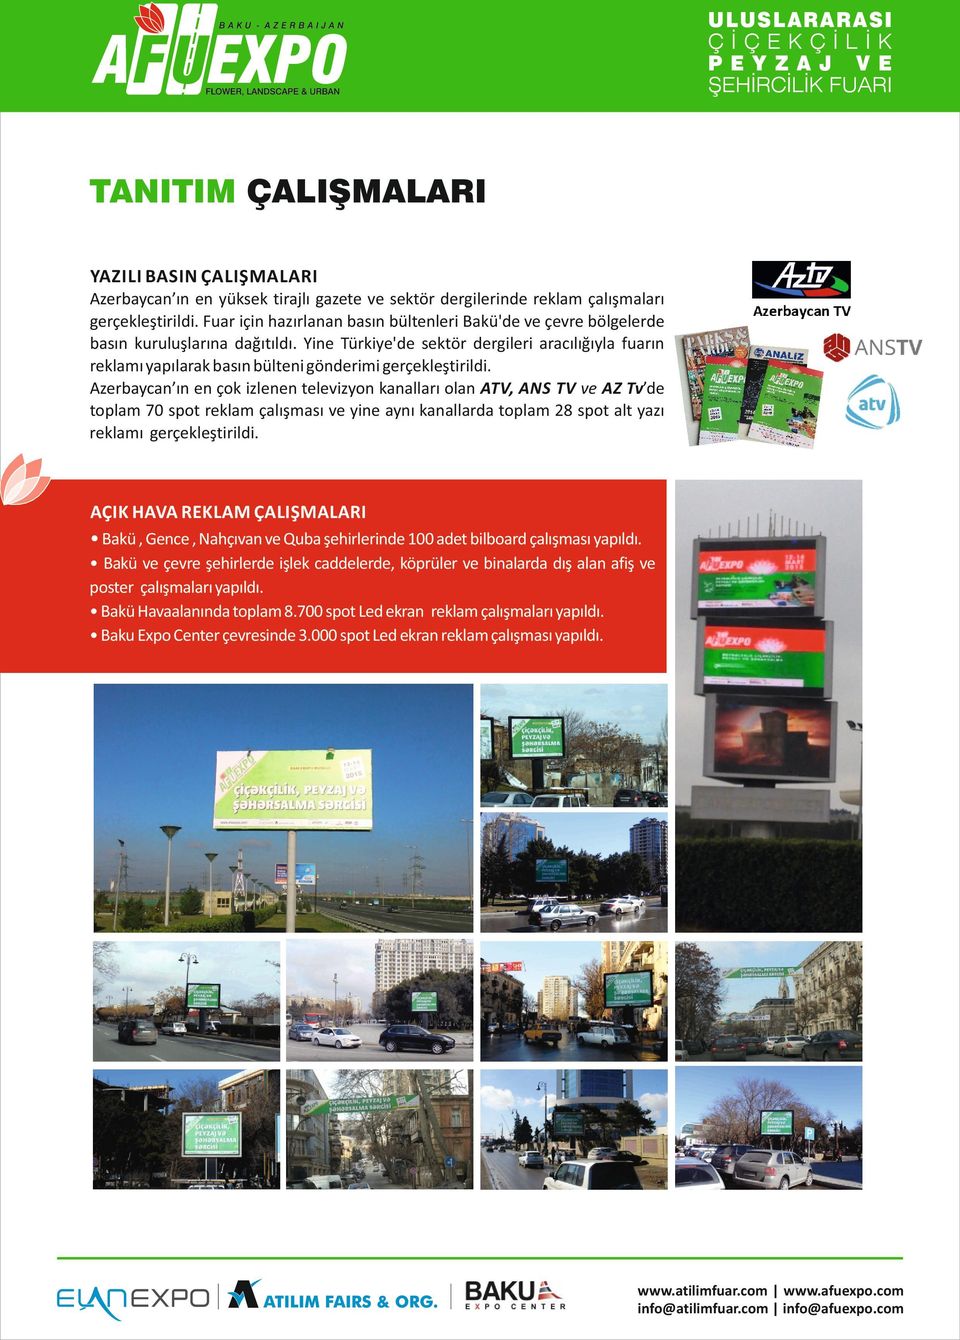 Yine Türkiye'de sektör dergileri aracılığıyla fuarın reklamı yapılarak basın bülteni gönderimi gerçekleştirildi.